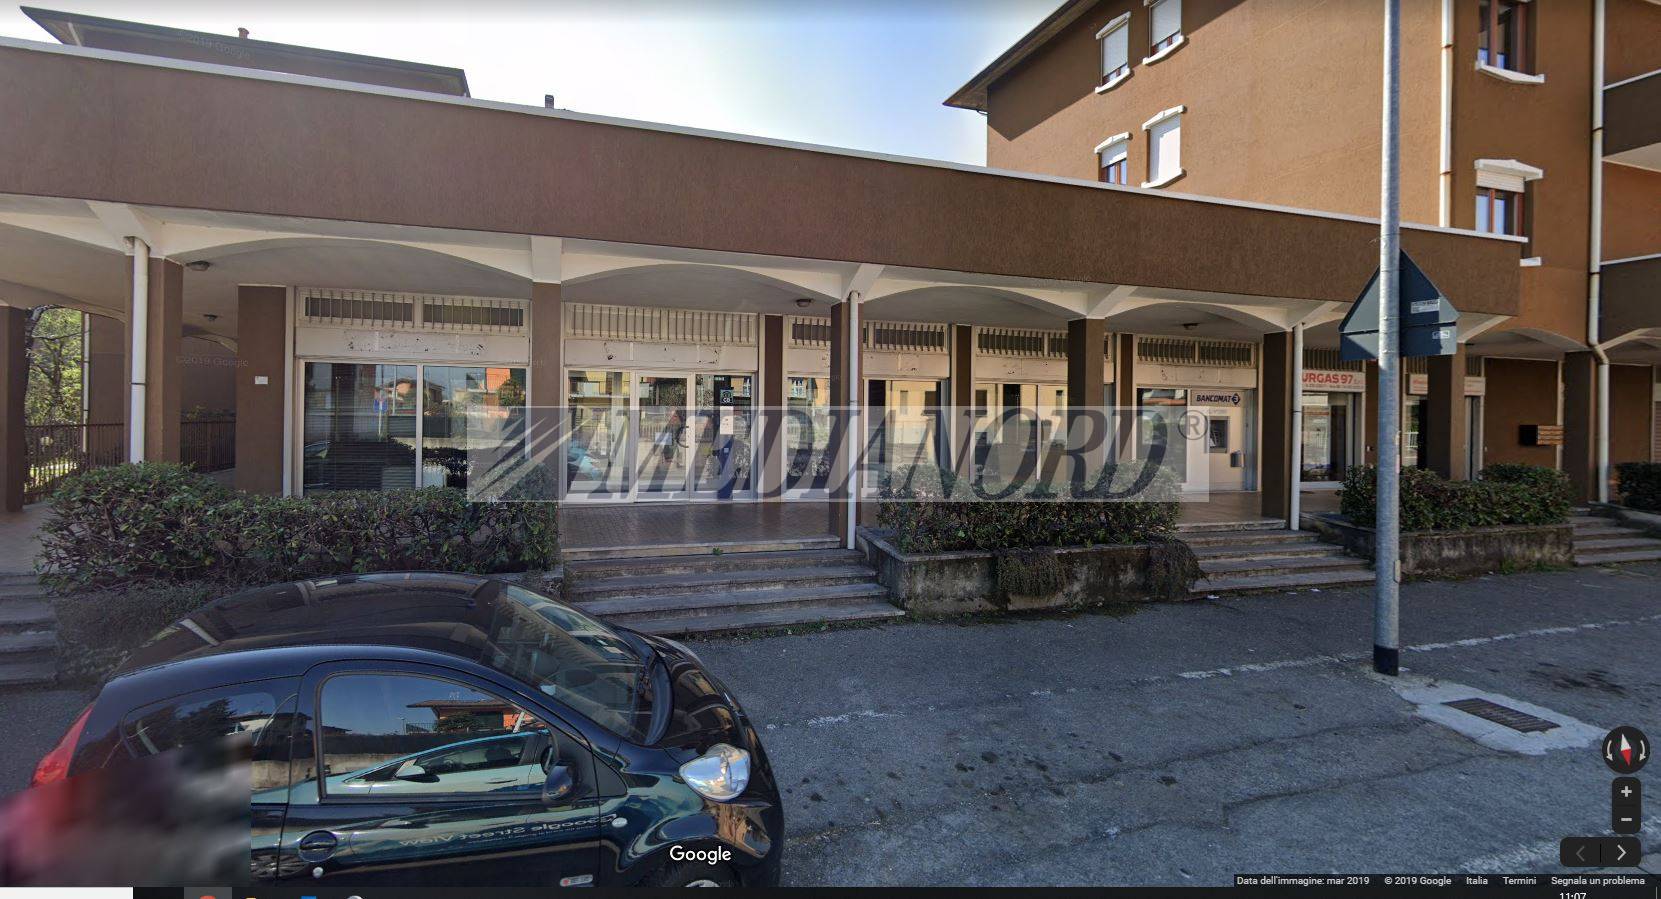 Ufficio / Studio in affitto a Bonate Sopra, 9999 locali, prezzo € 195.000 | PortaleAgenzieImmobiliari.it